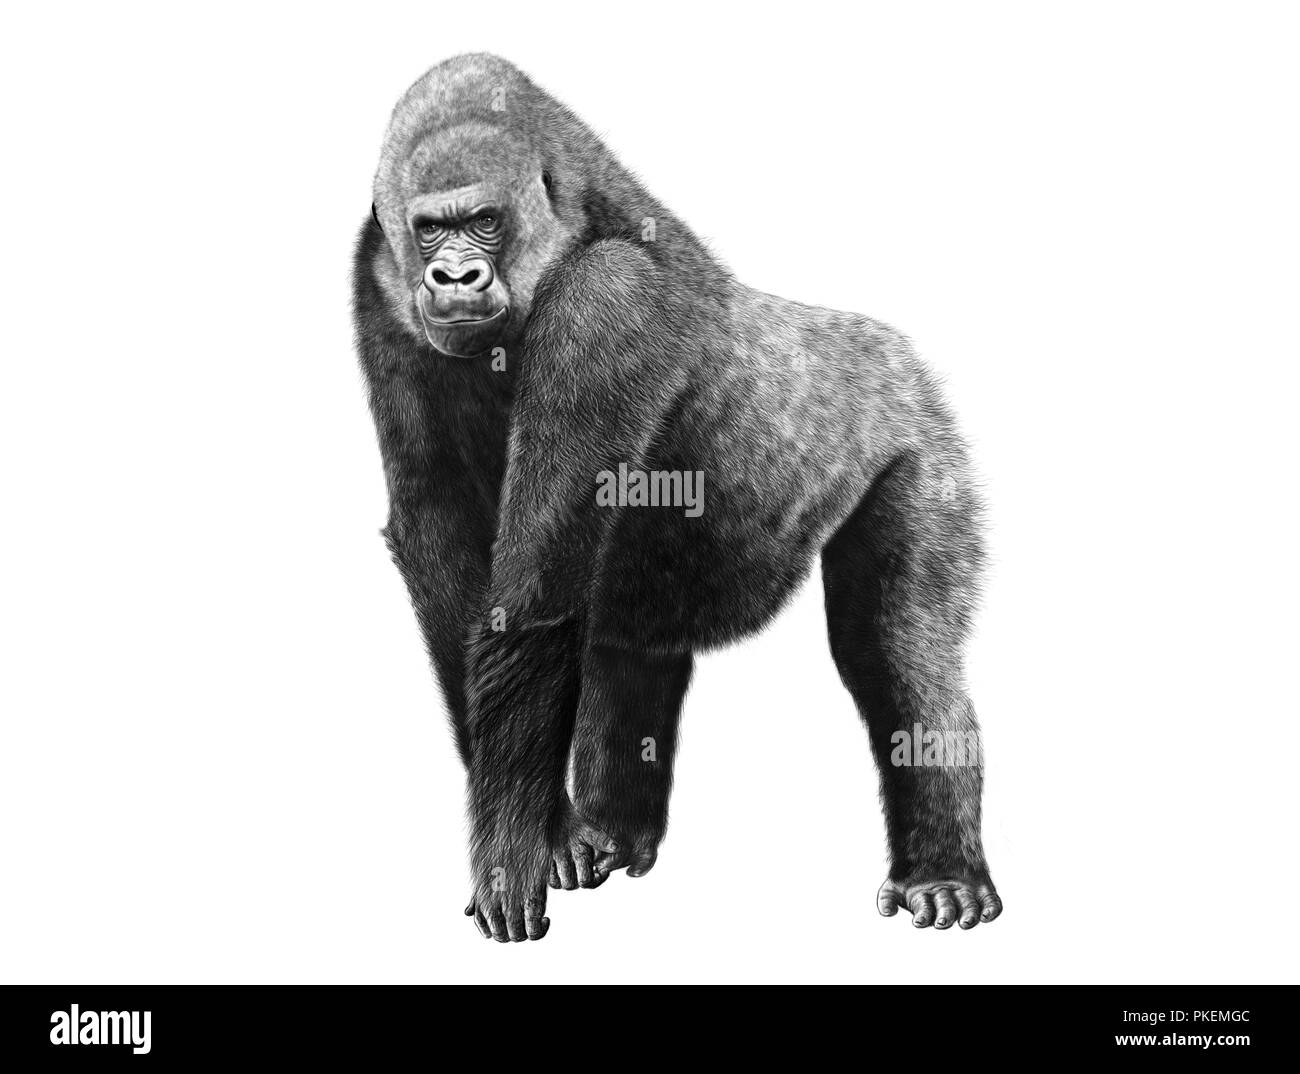 Crayon numérique illustration d'un gorille Banque D'Images